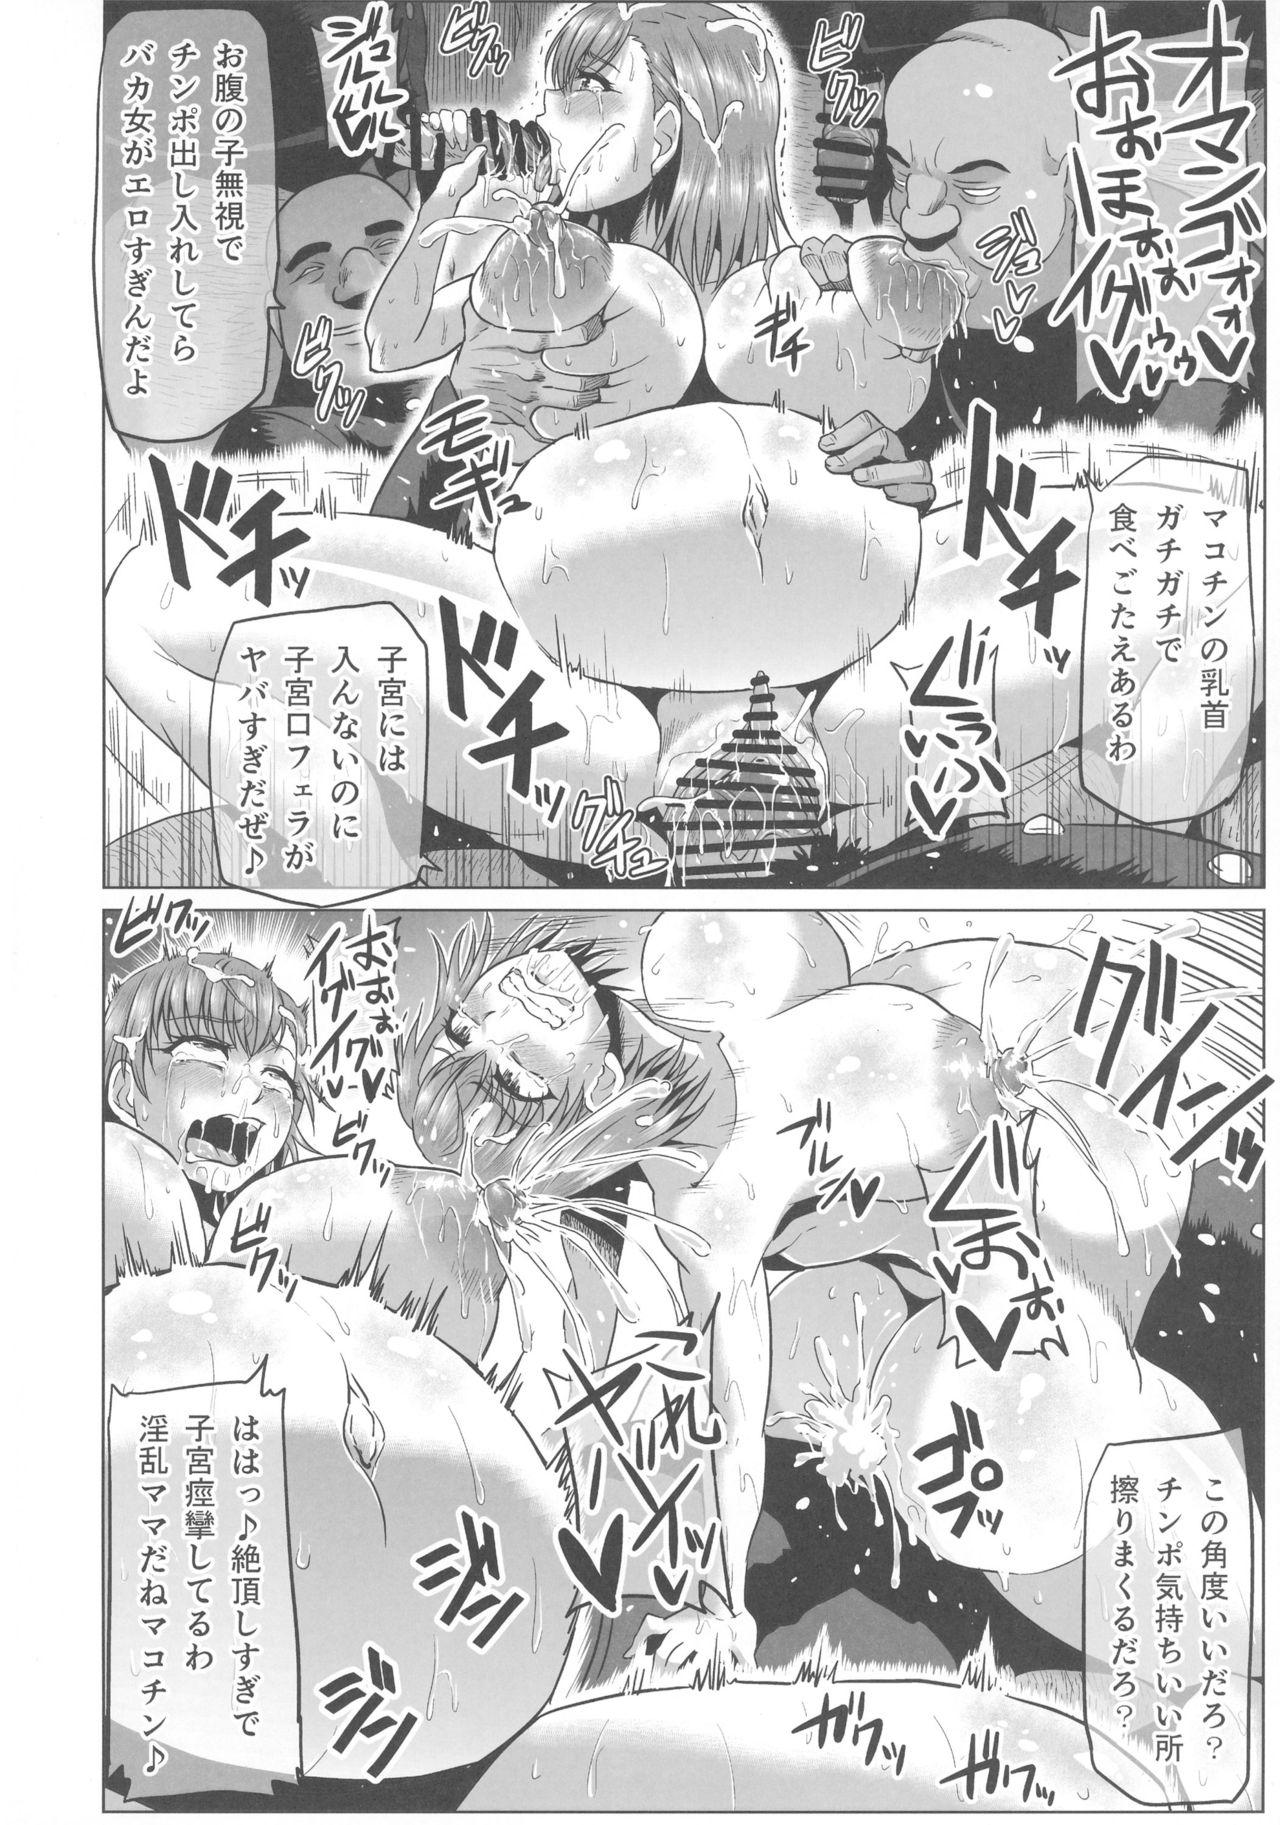 18 Year Old Toaru Nikubenki no Infinite Birth Academy Hen - Toaru majutsu no index Arabe - Page 10